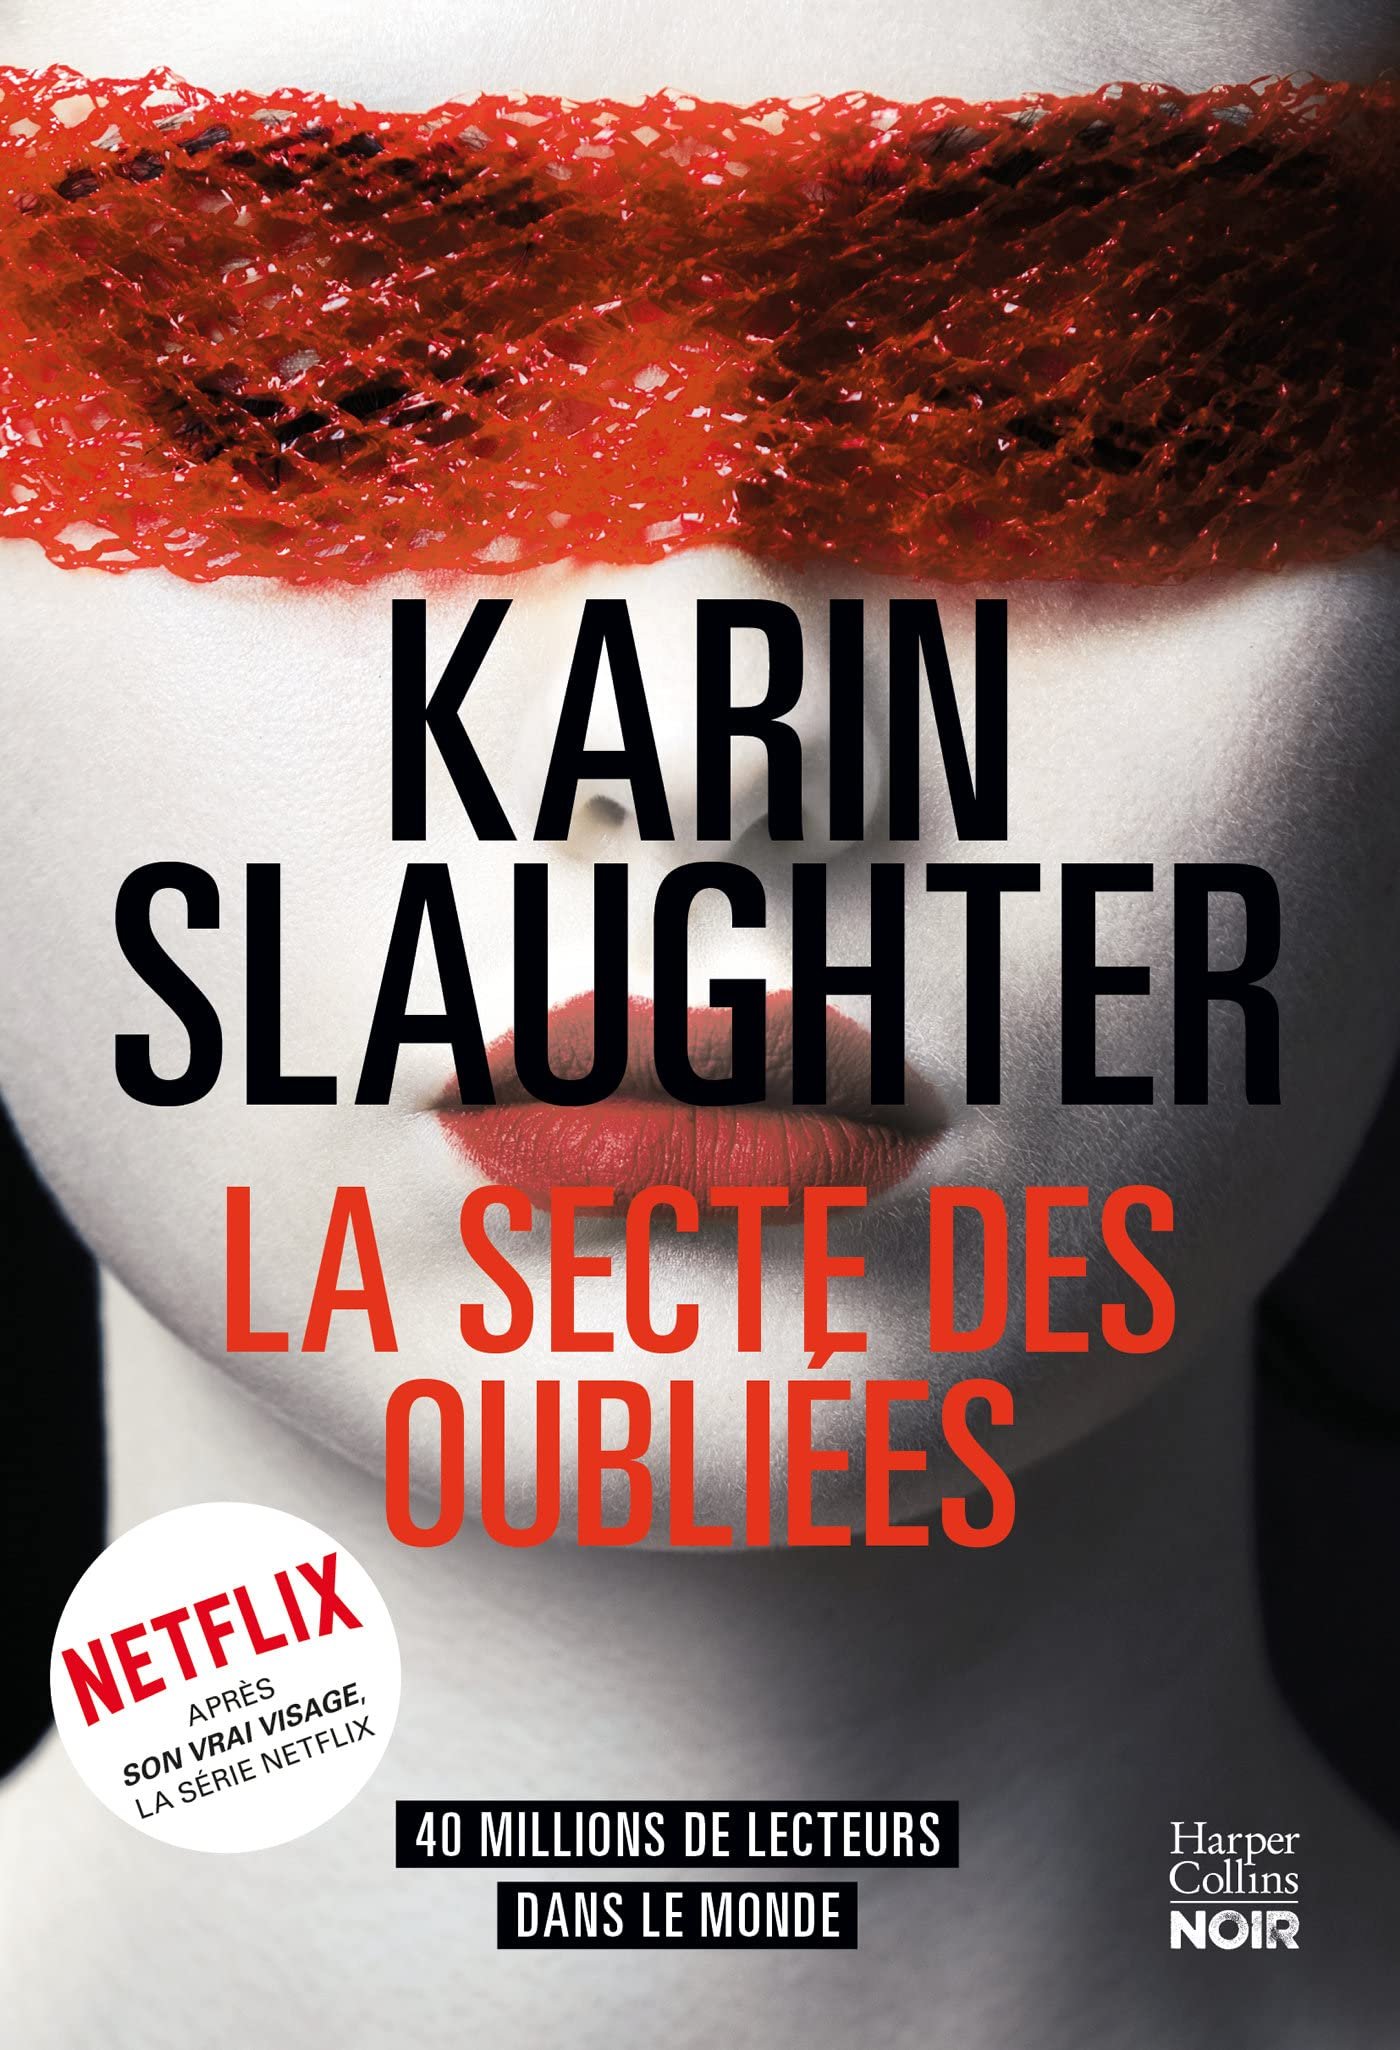 Karin Slaughter – La secte des oubliées